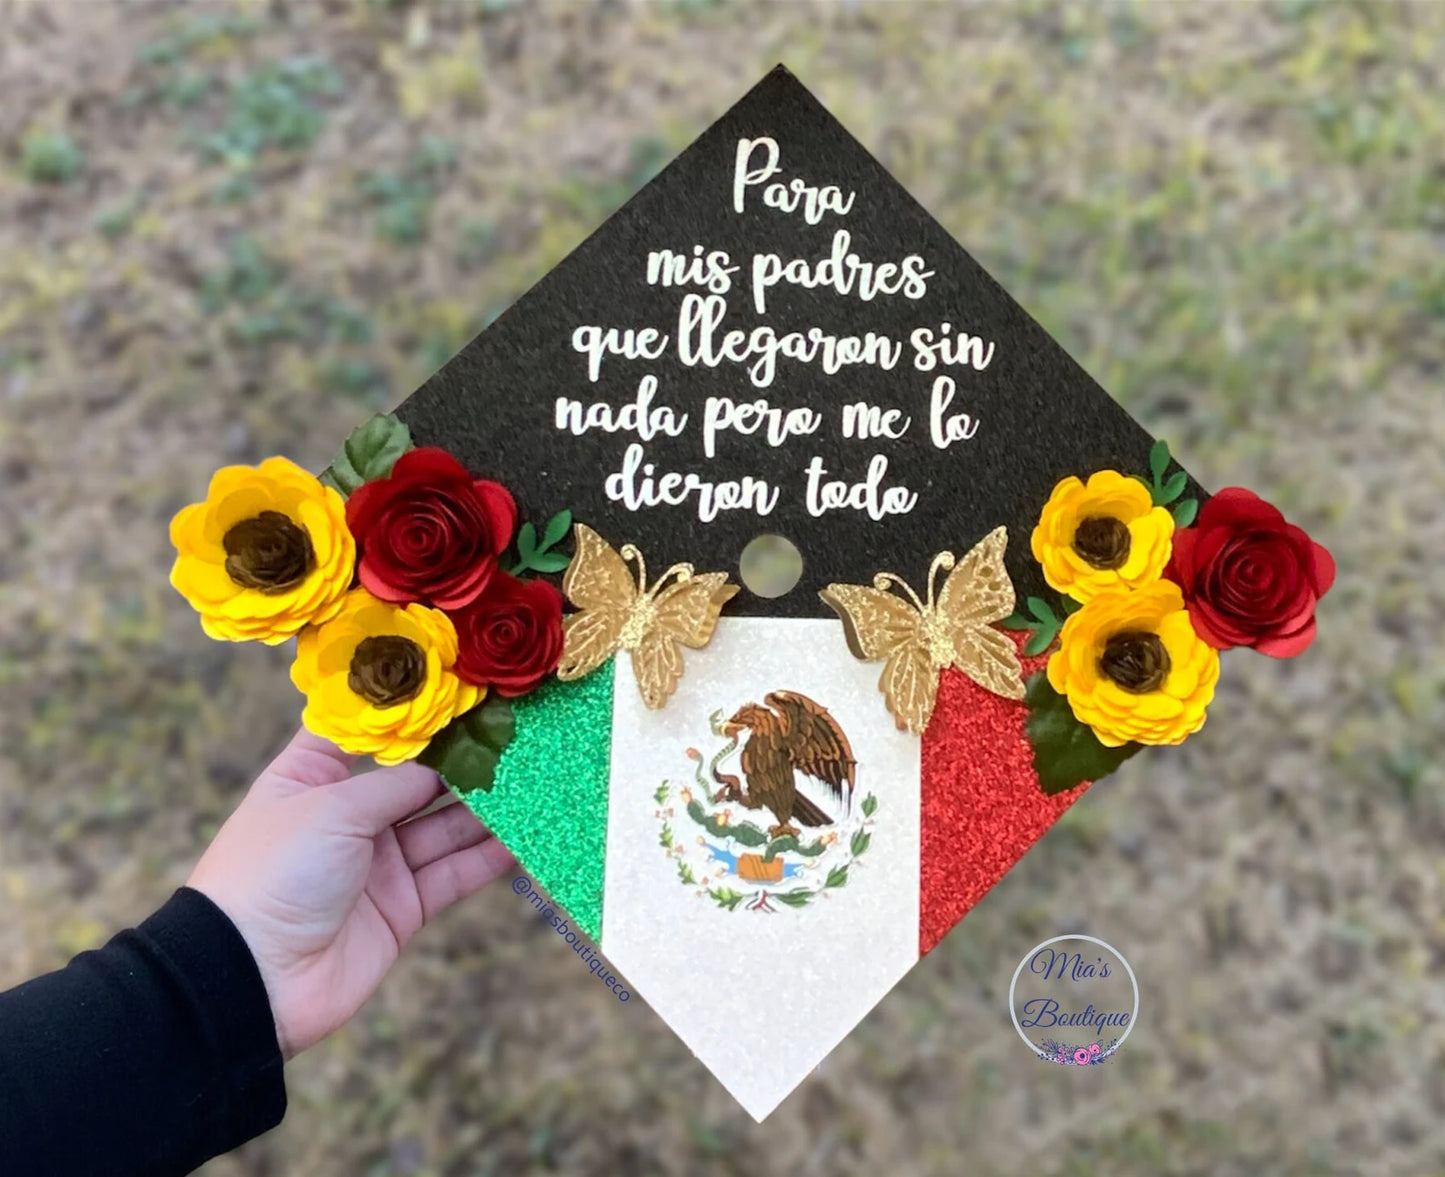 Mexico Graduation Cap Custom Graduation Cap cover Graduation Cap Personalized Graduation Cap Flower Roses